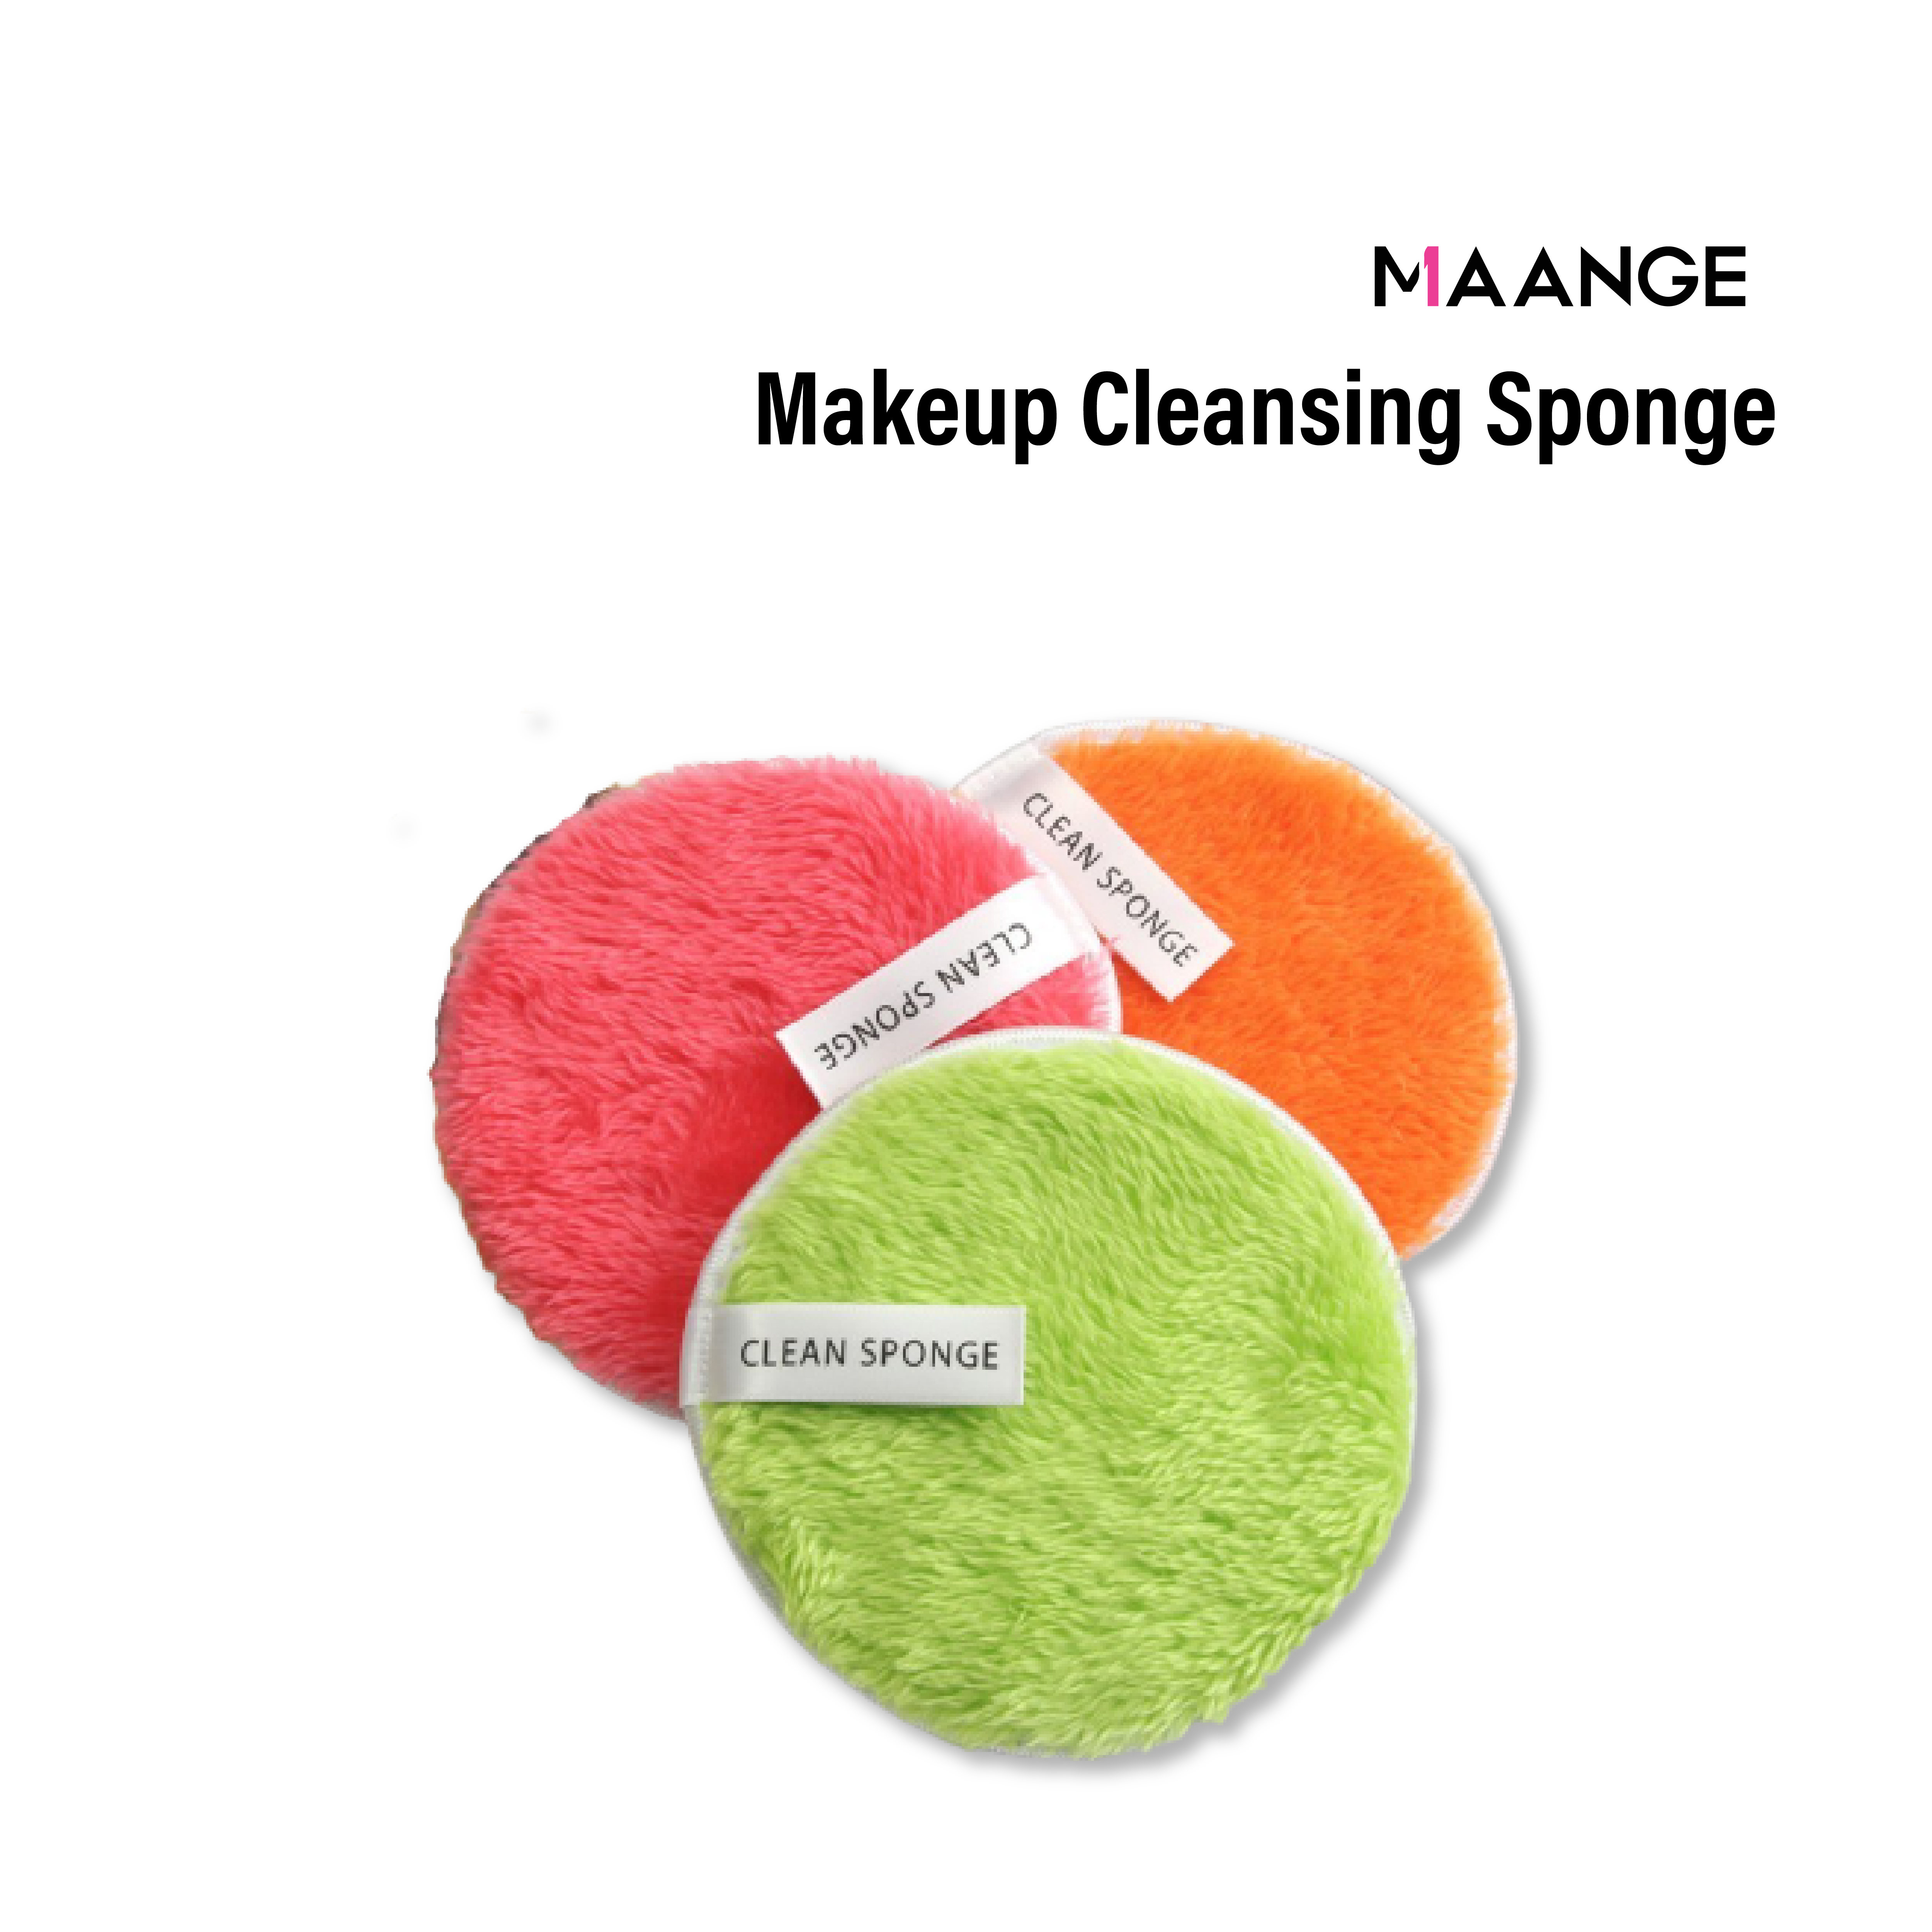 Buy MAANGE CLEAN SPONGE MAKEUP REMOVER Online From 